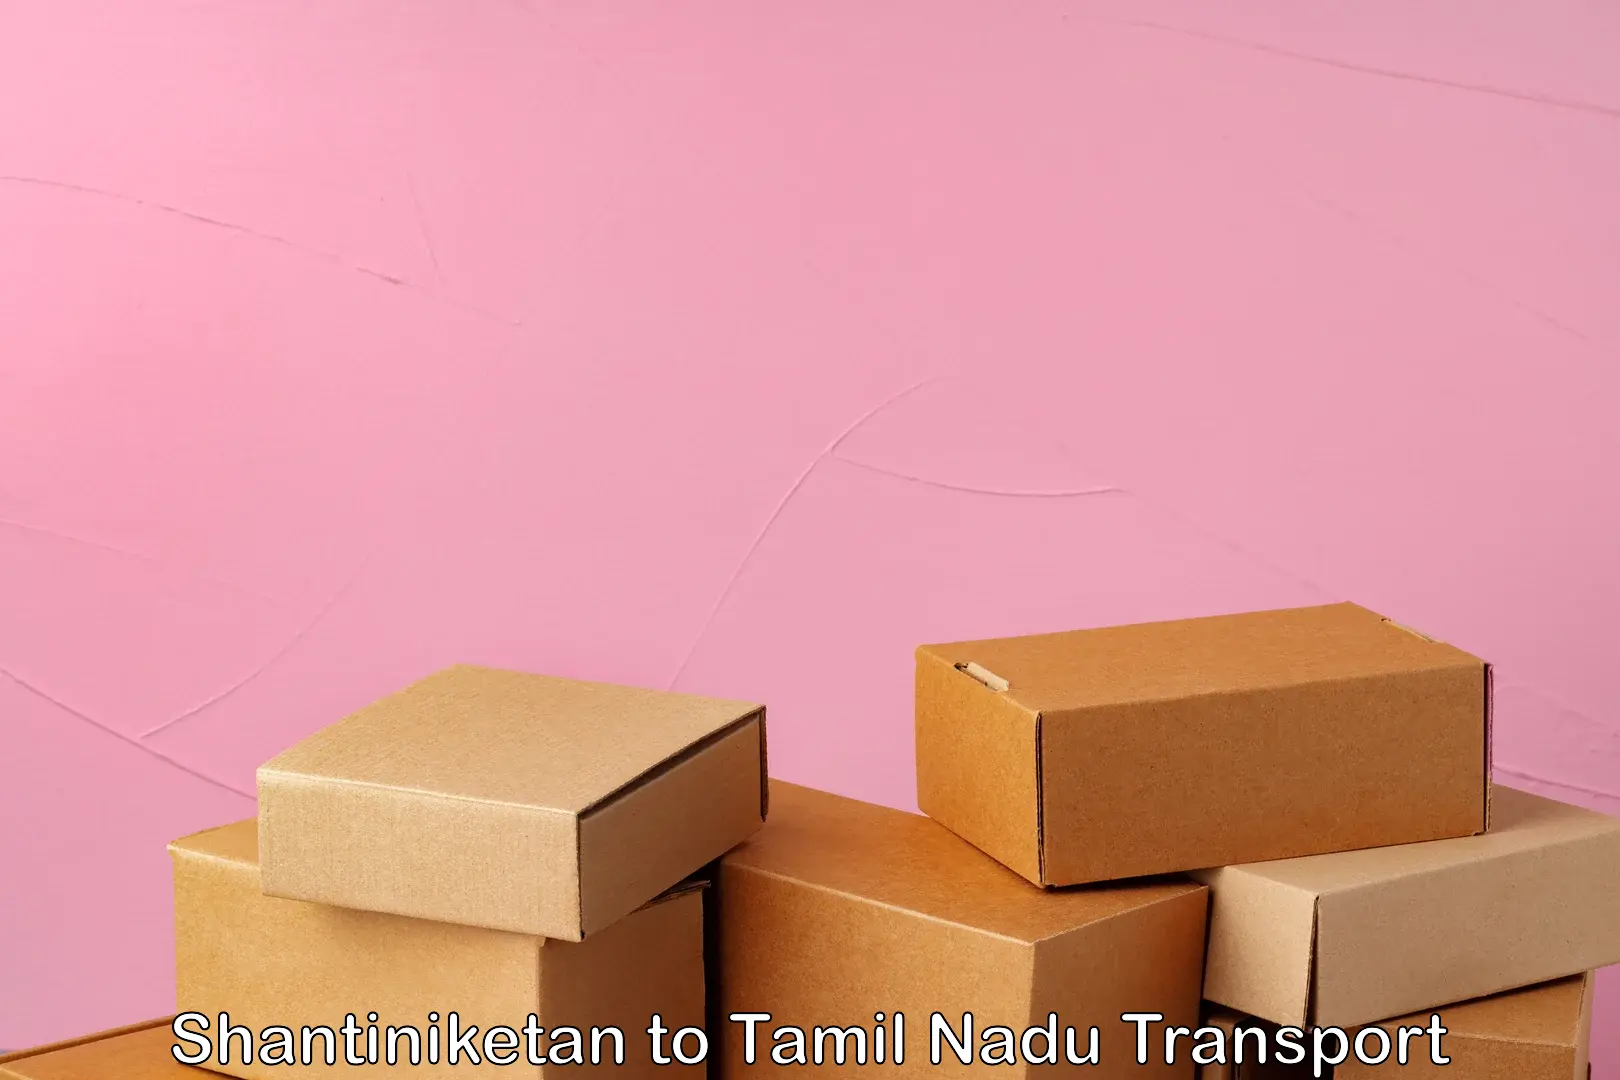 Truck transport companies in India Shantiniketan to Tamil Nadu